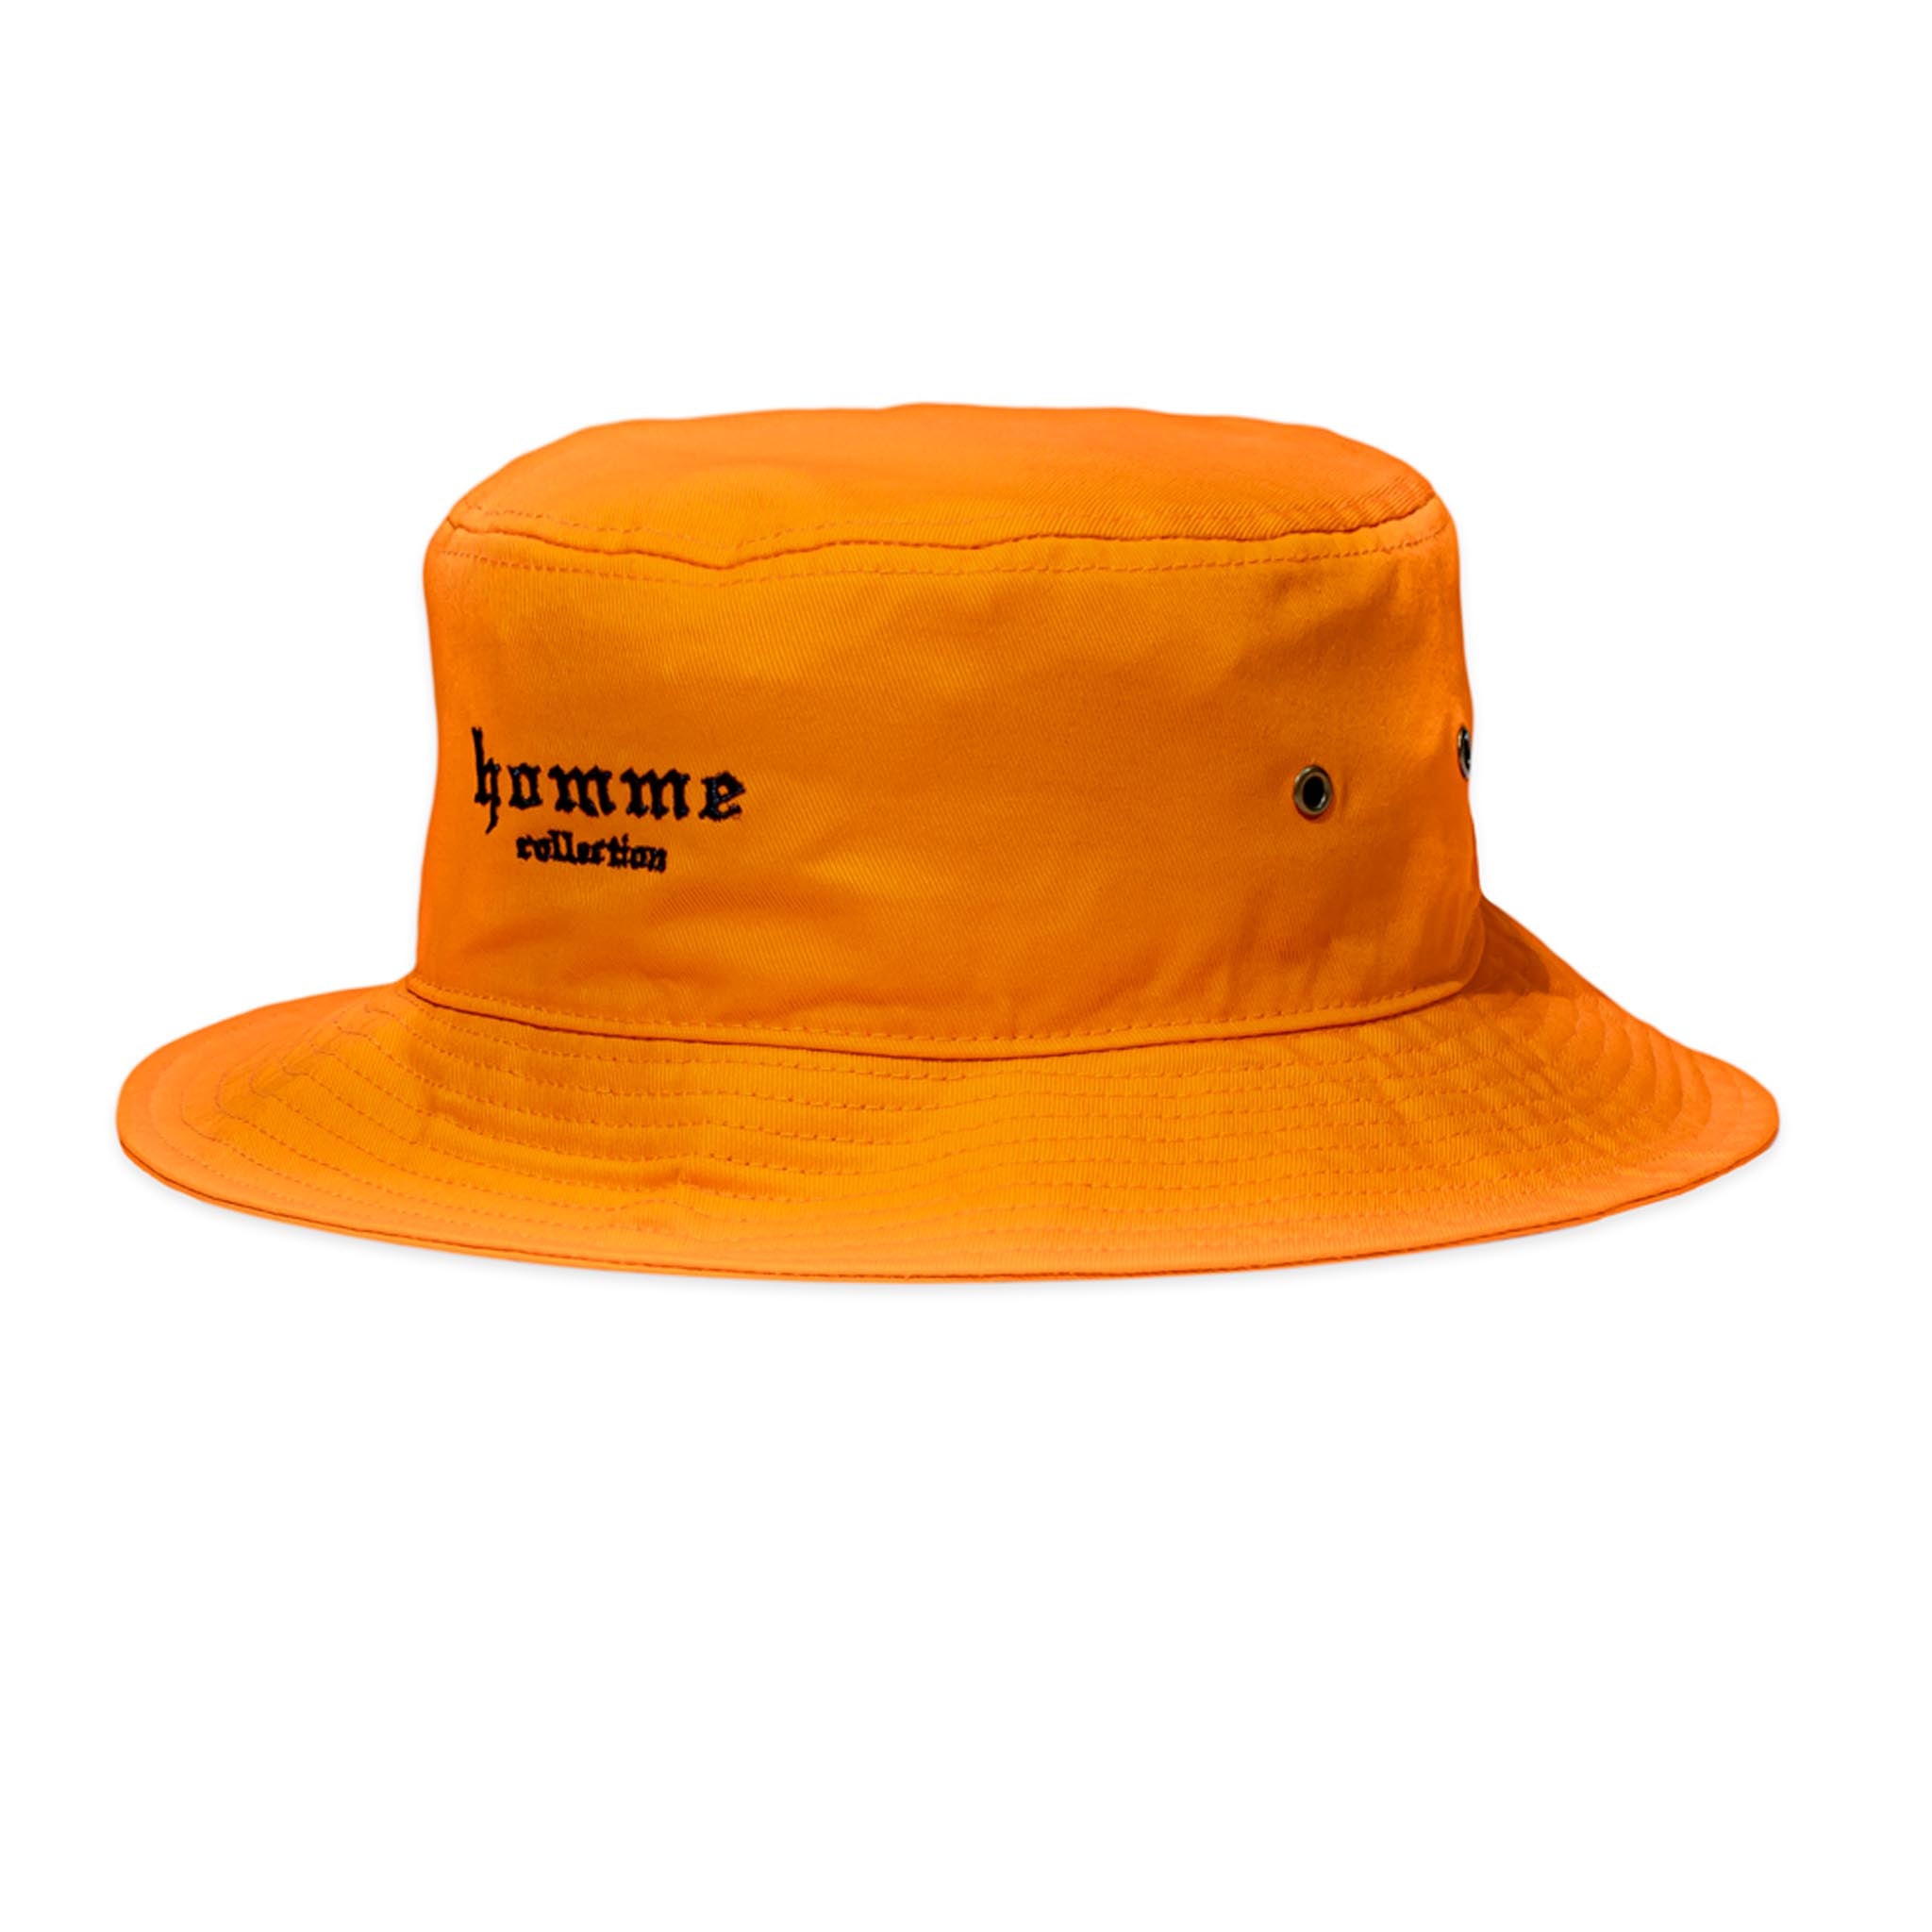 HOMME+ Collection Bucket Hat Orange